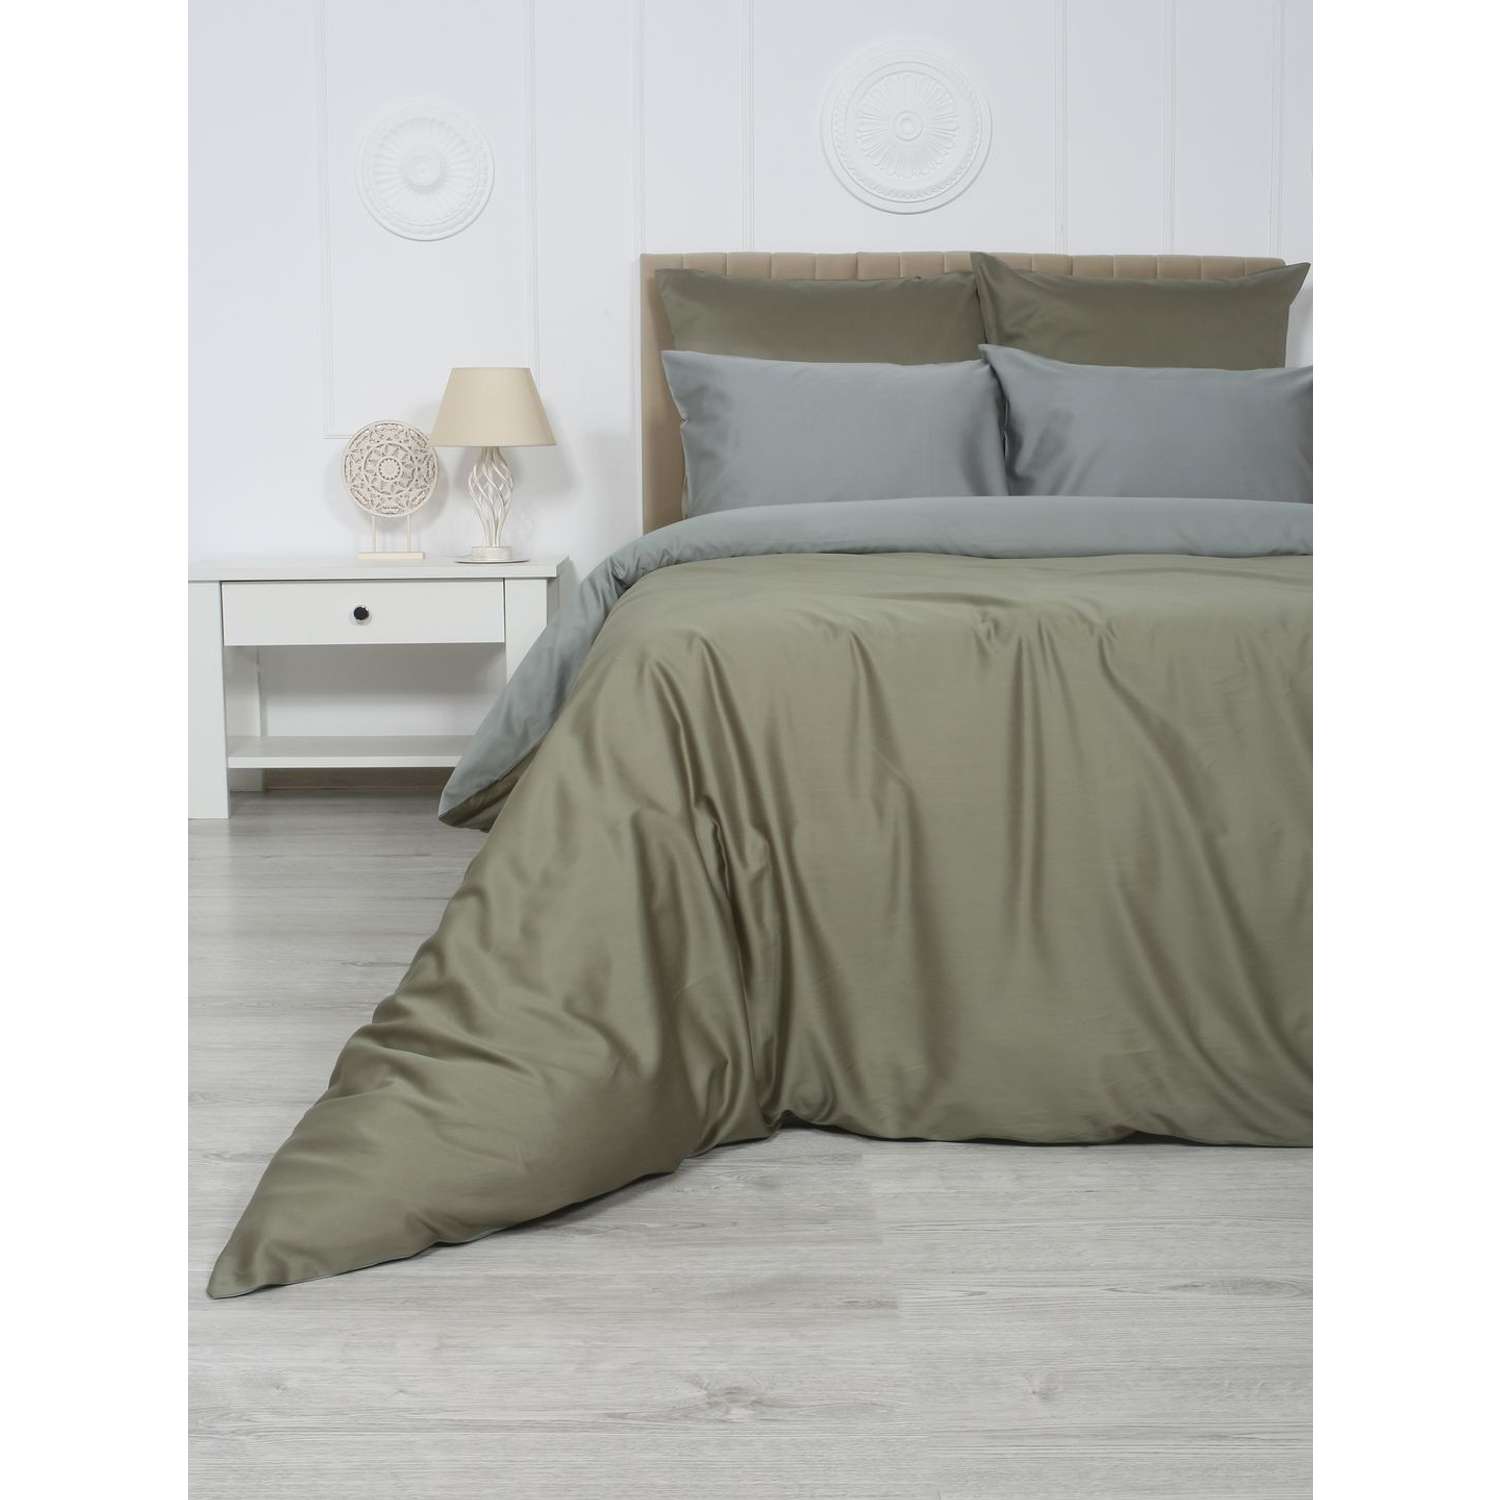 Комплект постельного белья Mona Liza 2 спальный ML Luxury sage тенсель лиоцелл шалфей/камень - фото 7